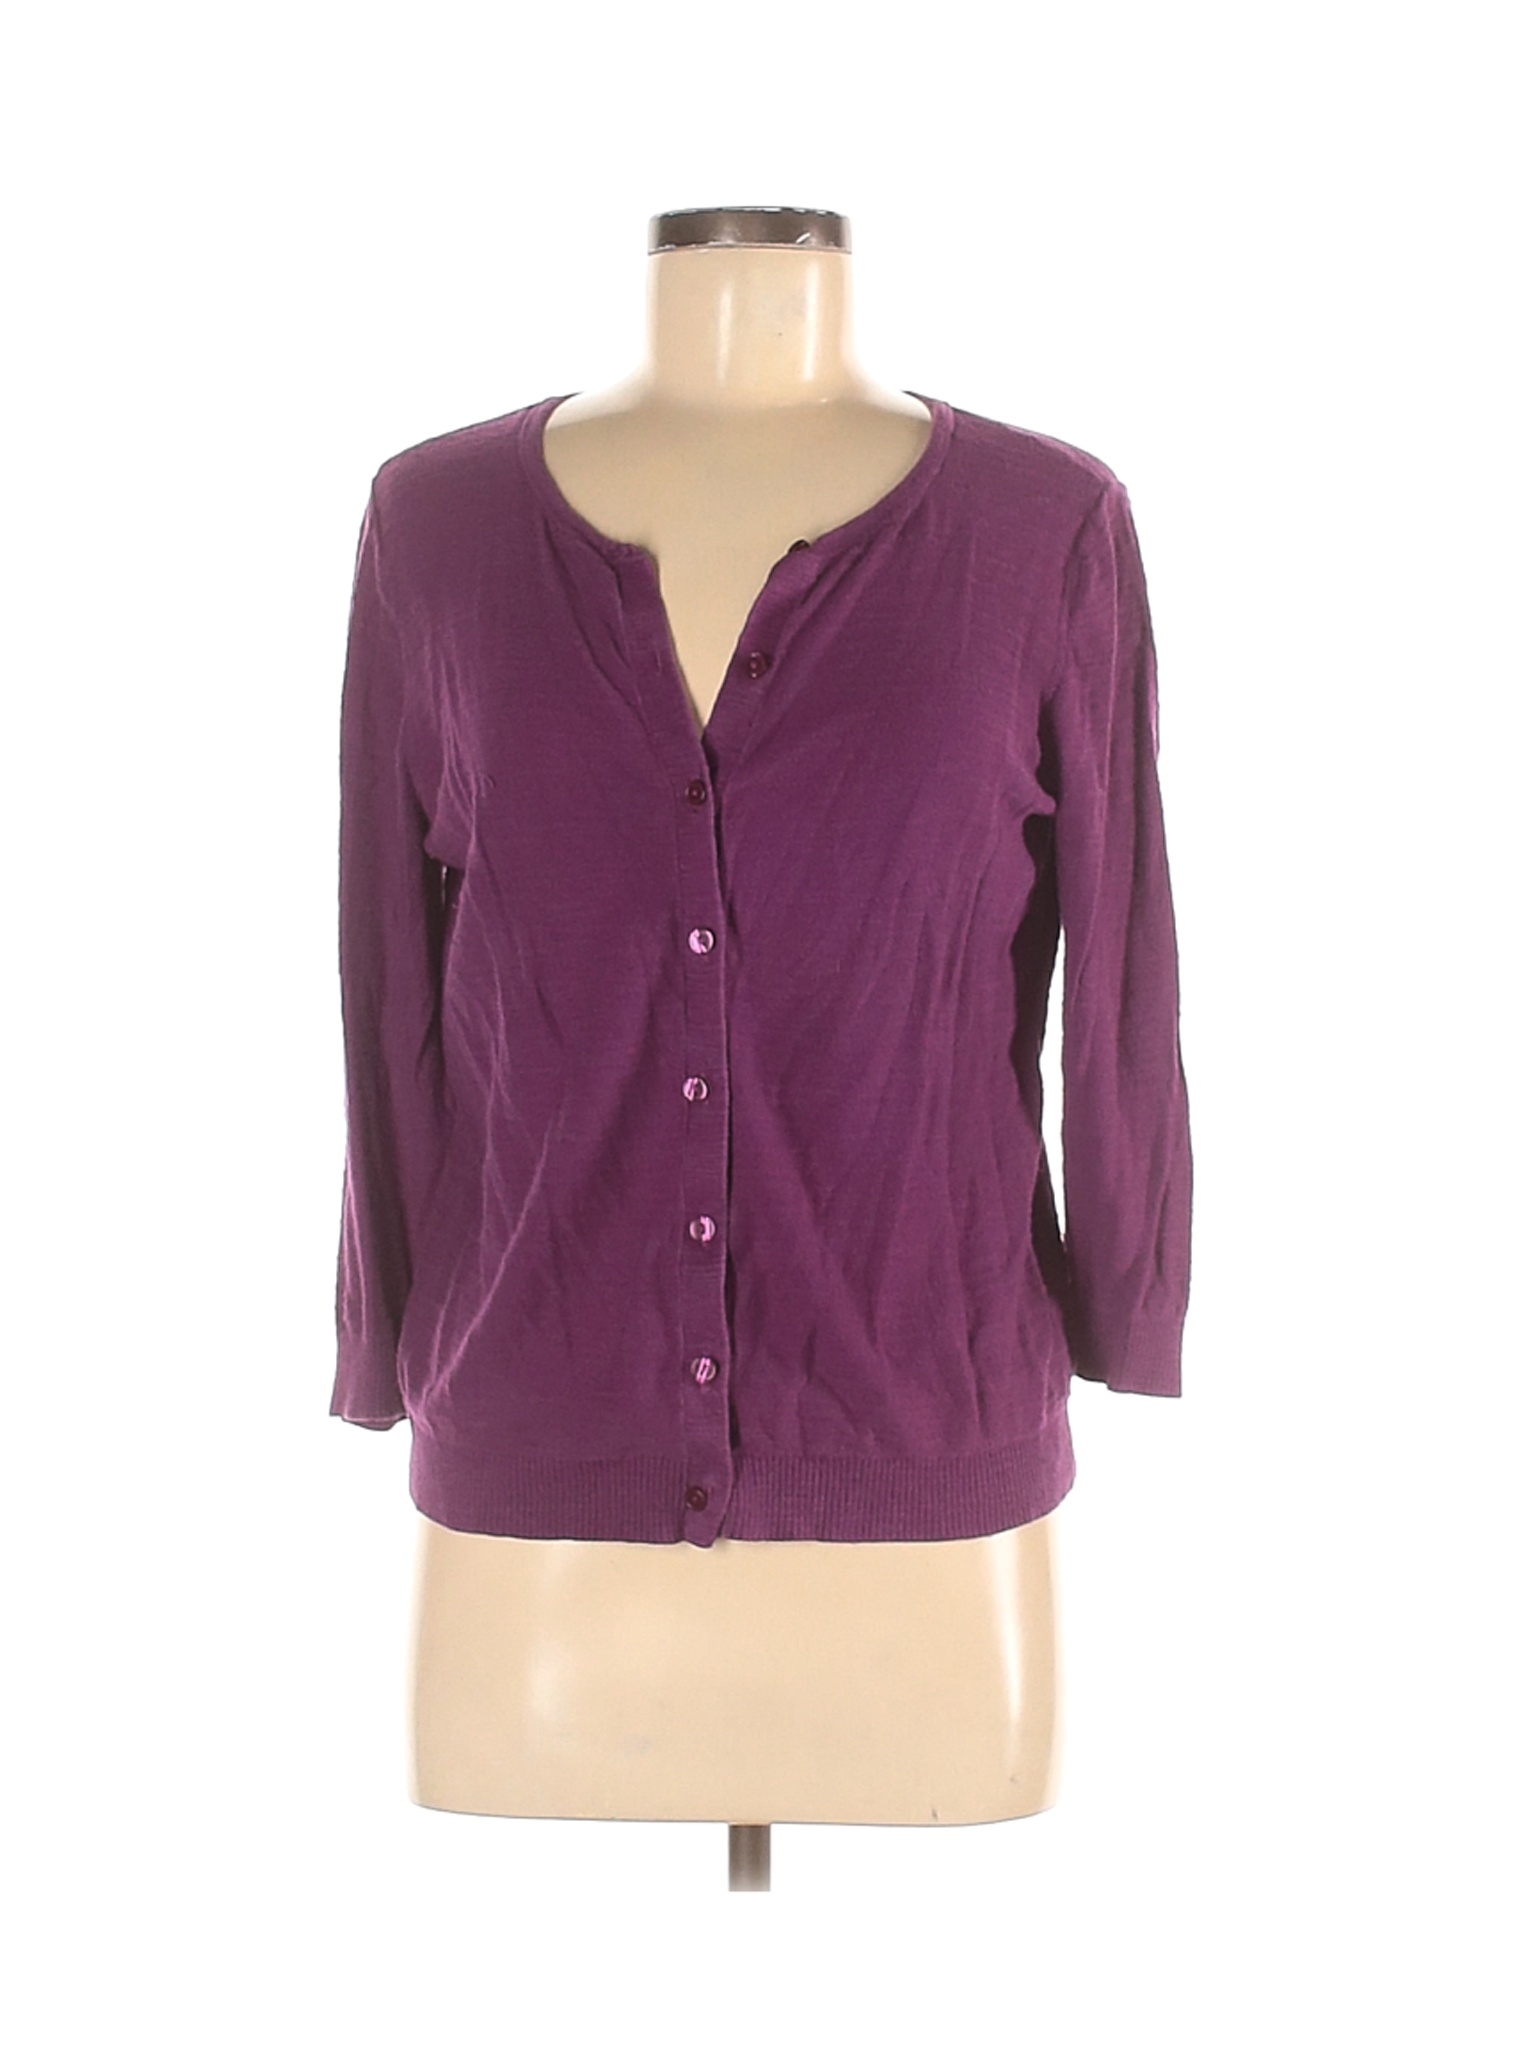 Ann Taylor LOFT Outlet Women Purple Cardigan M | eBay